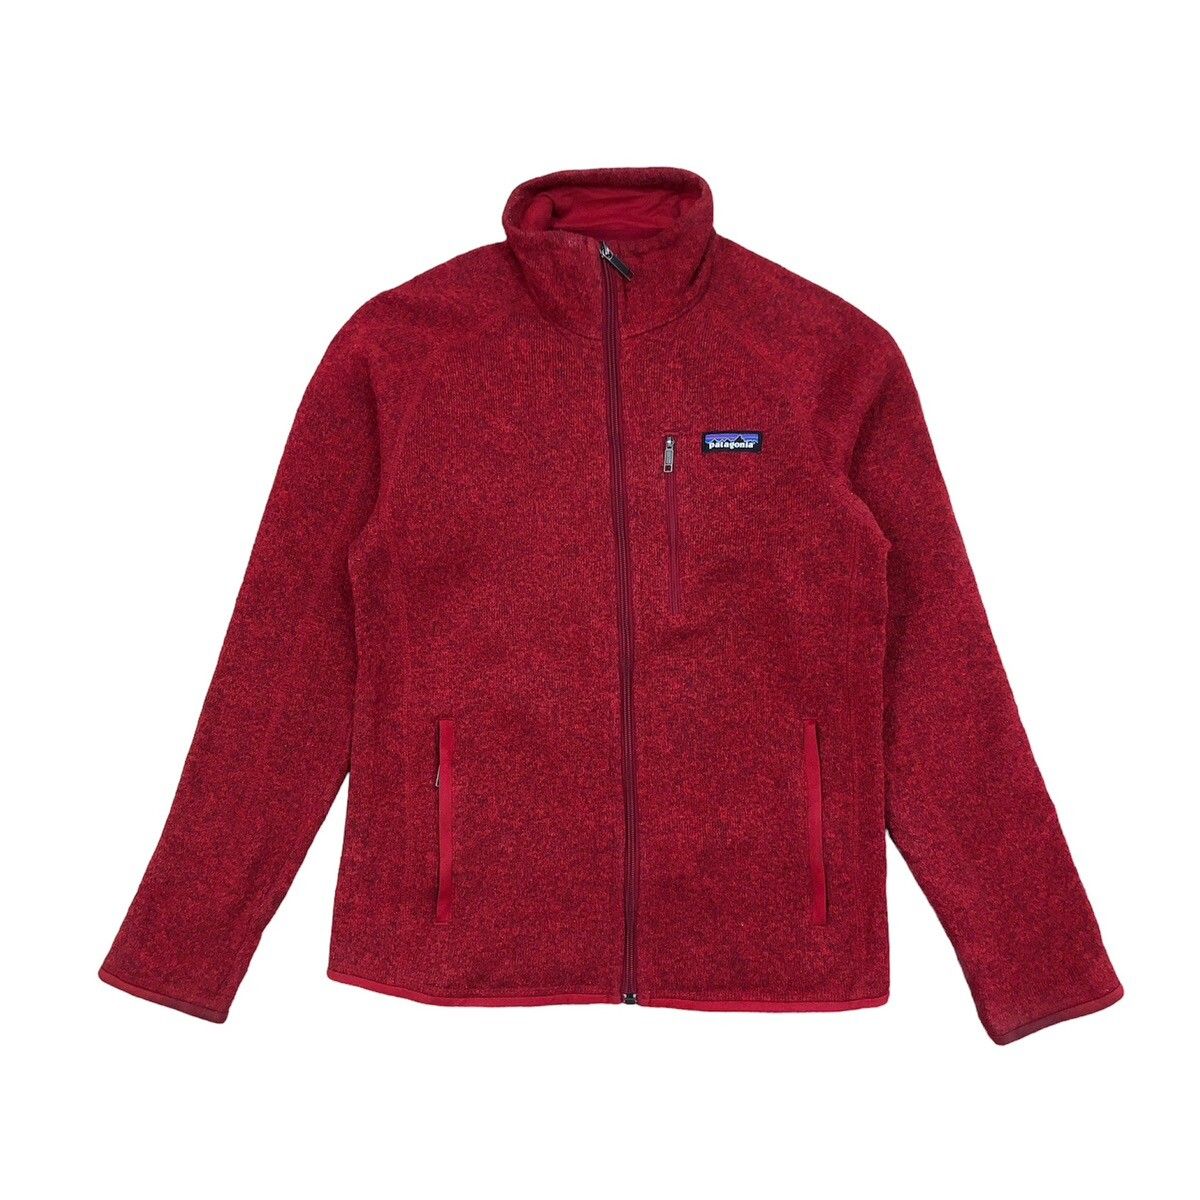 Vintage - Patagonia Fullzip Fleece Jacket - 1